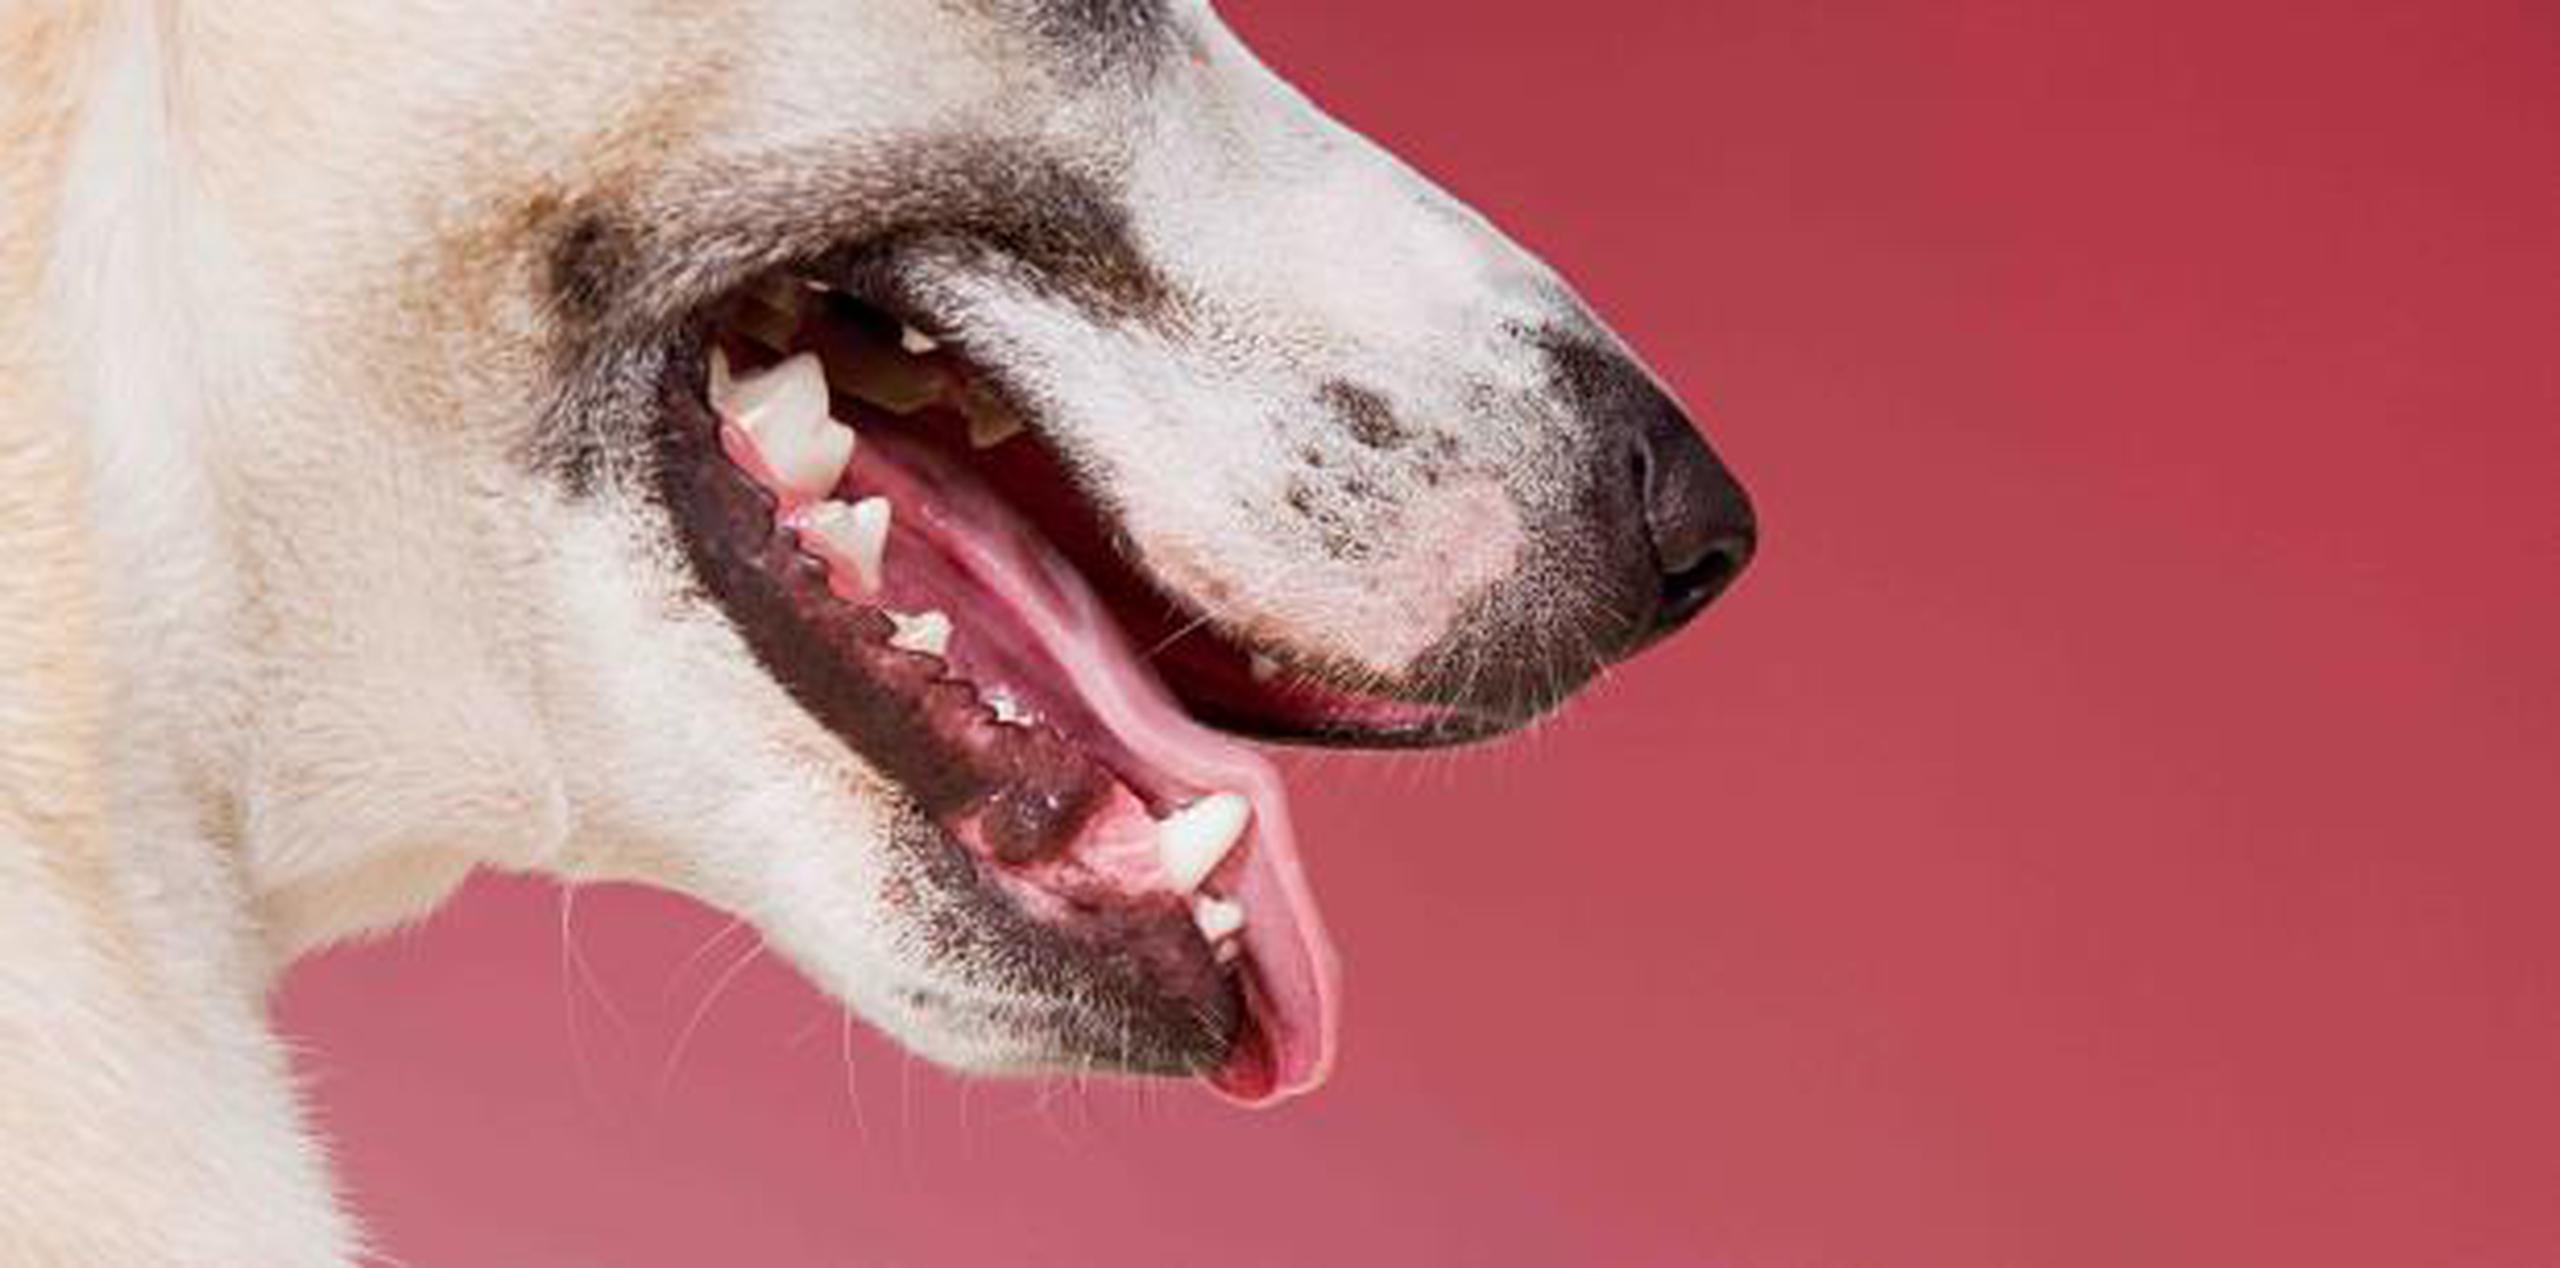 La infección es rara y 99% de las personas con perros nunca contraerán la bacteria. (Shutterstock)